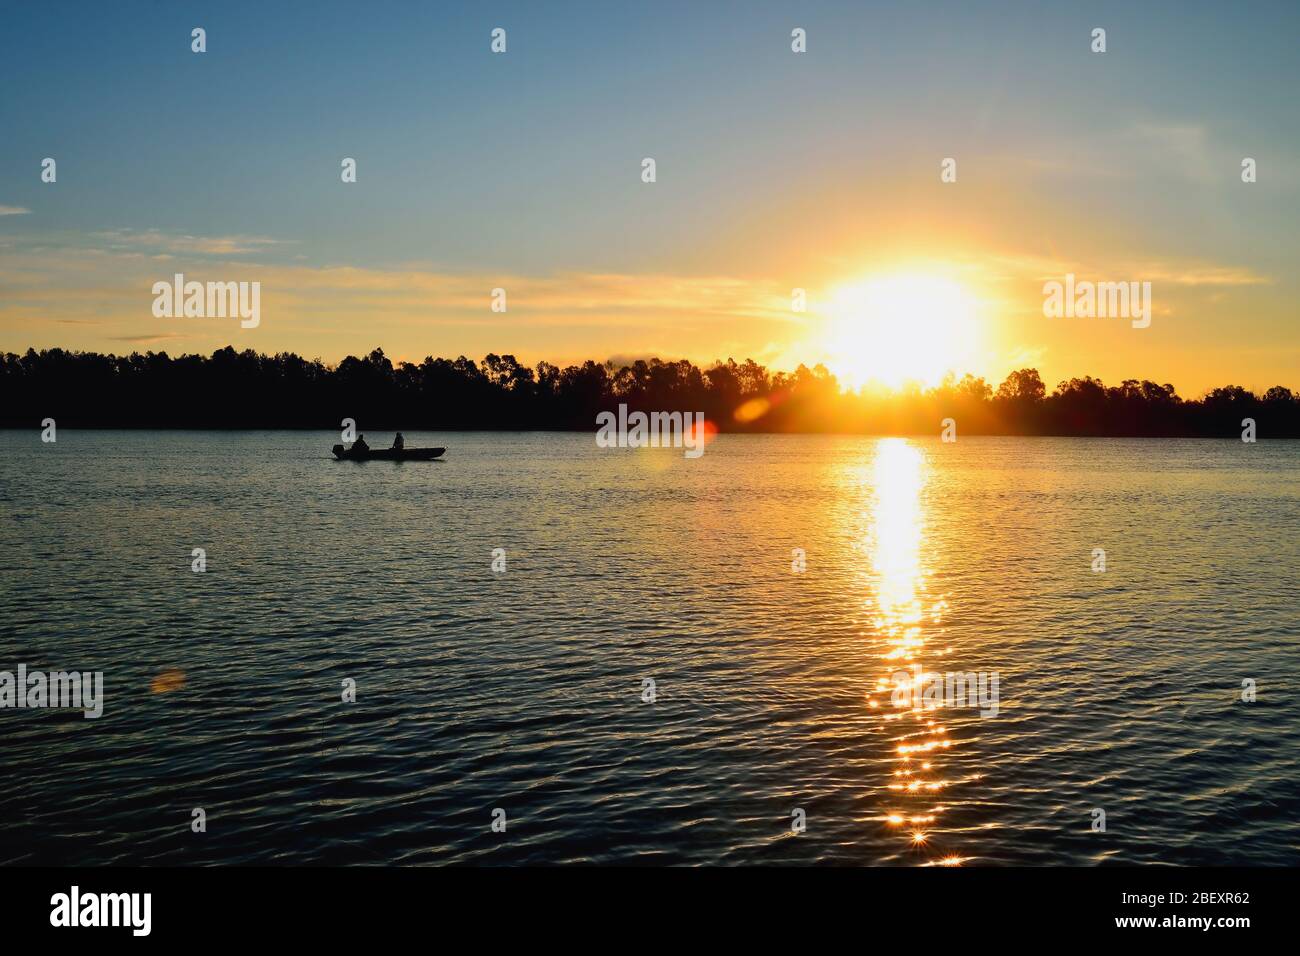 Sonnenaufgang auf dem Fluss. Ein Boot mit Anglern. Schöne Reflexe auf dem Wasser. Stockfoto